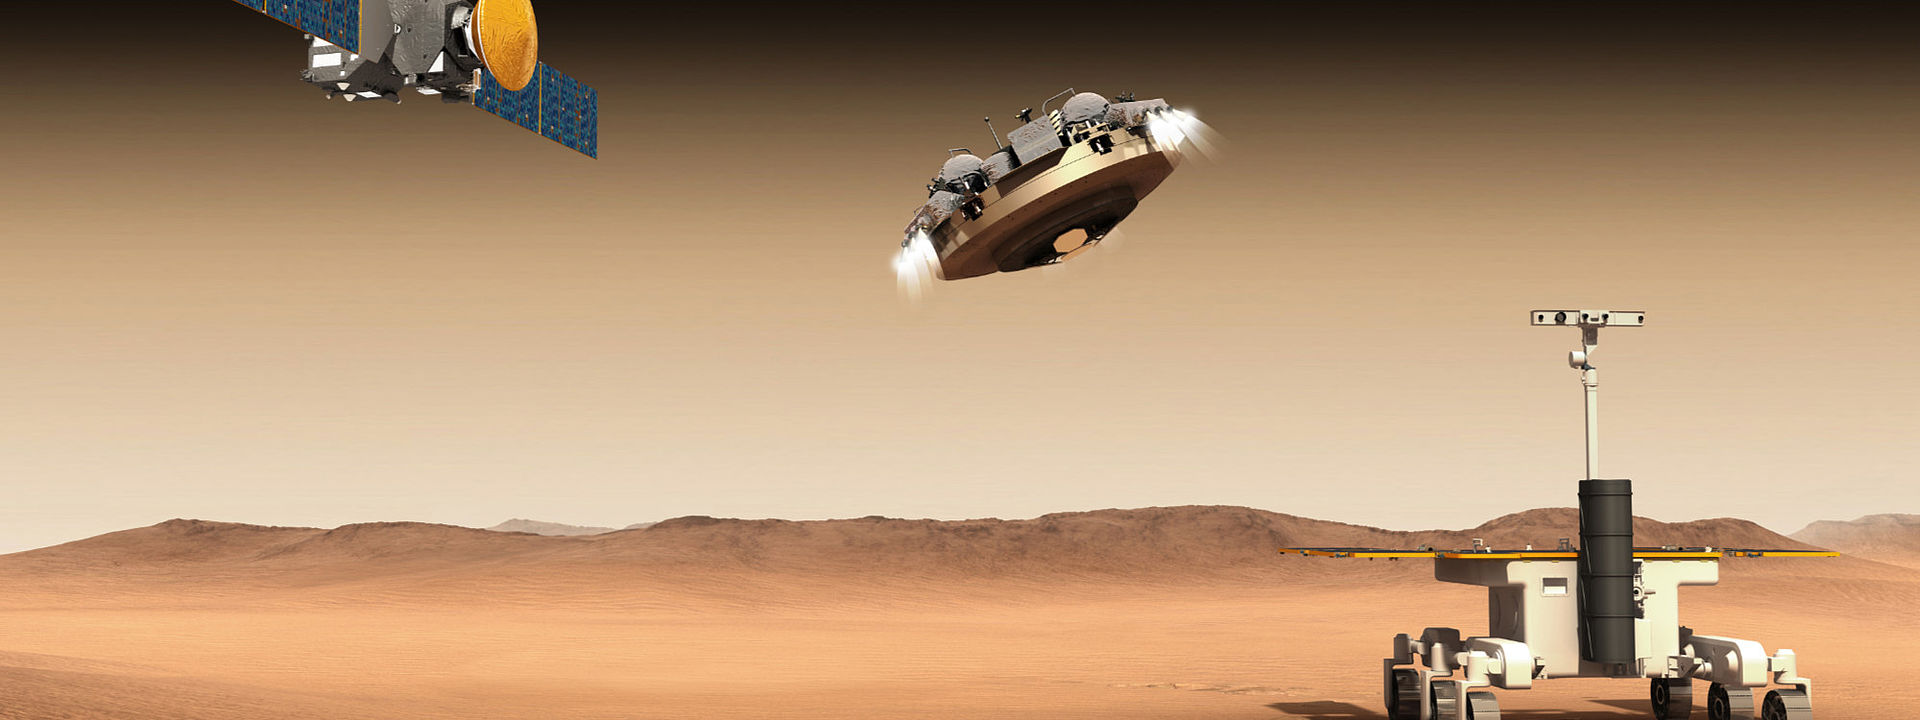 Mars rover and satellites on Mars